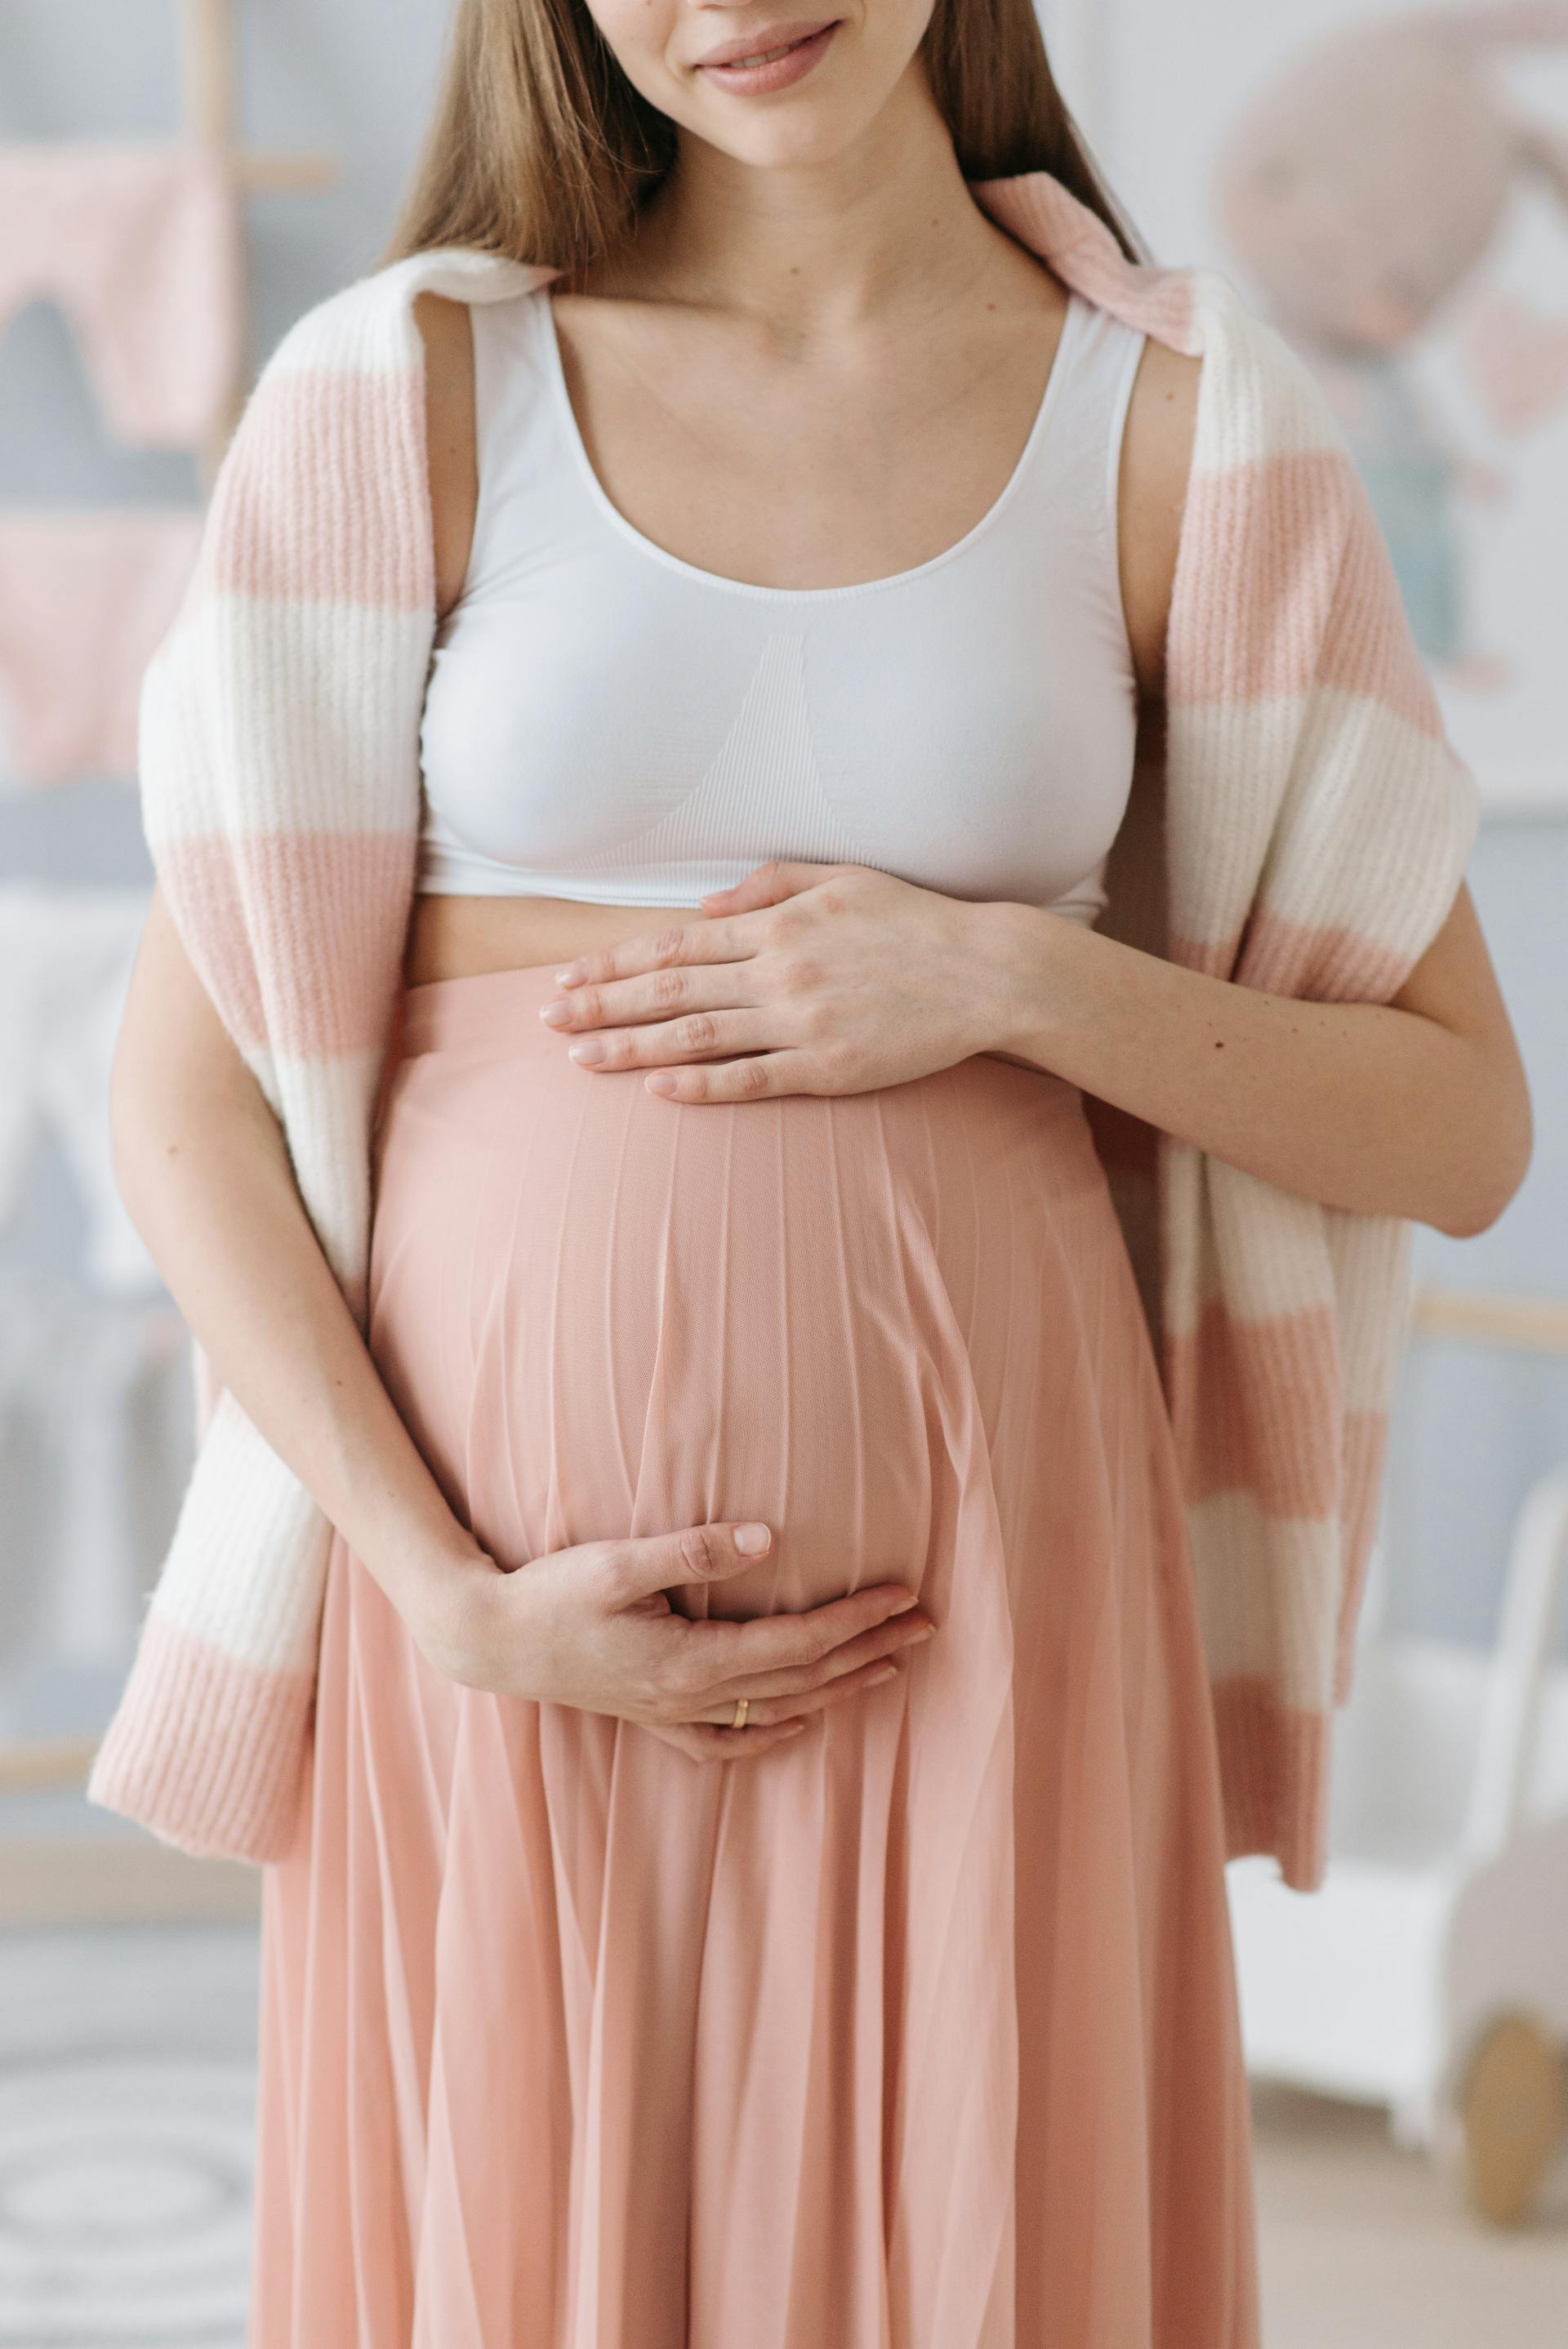 Una persona sujetando su barriga de embarazada | Fuente: Pexels